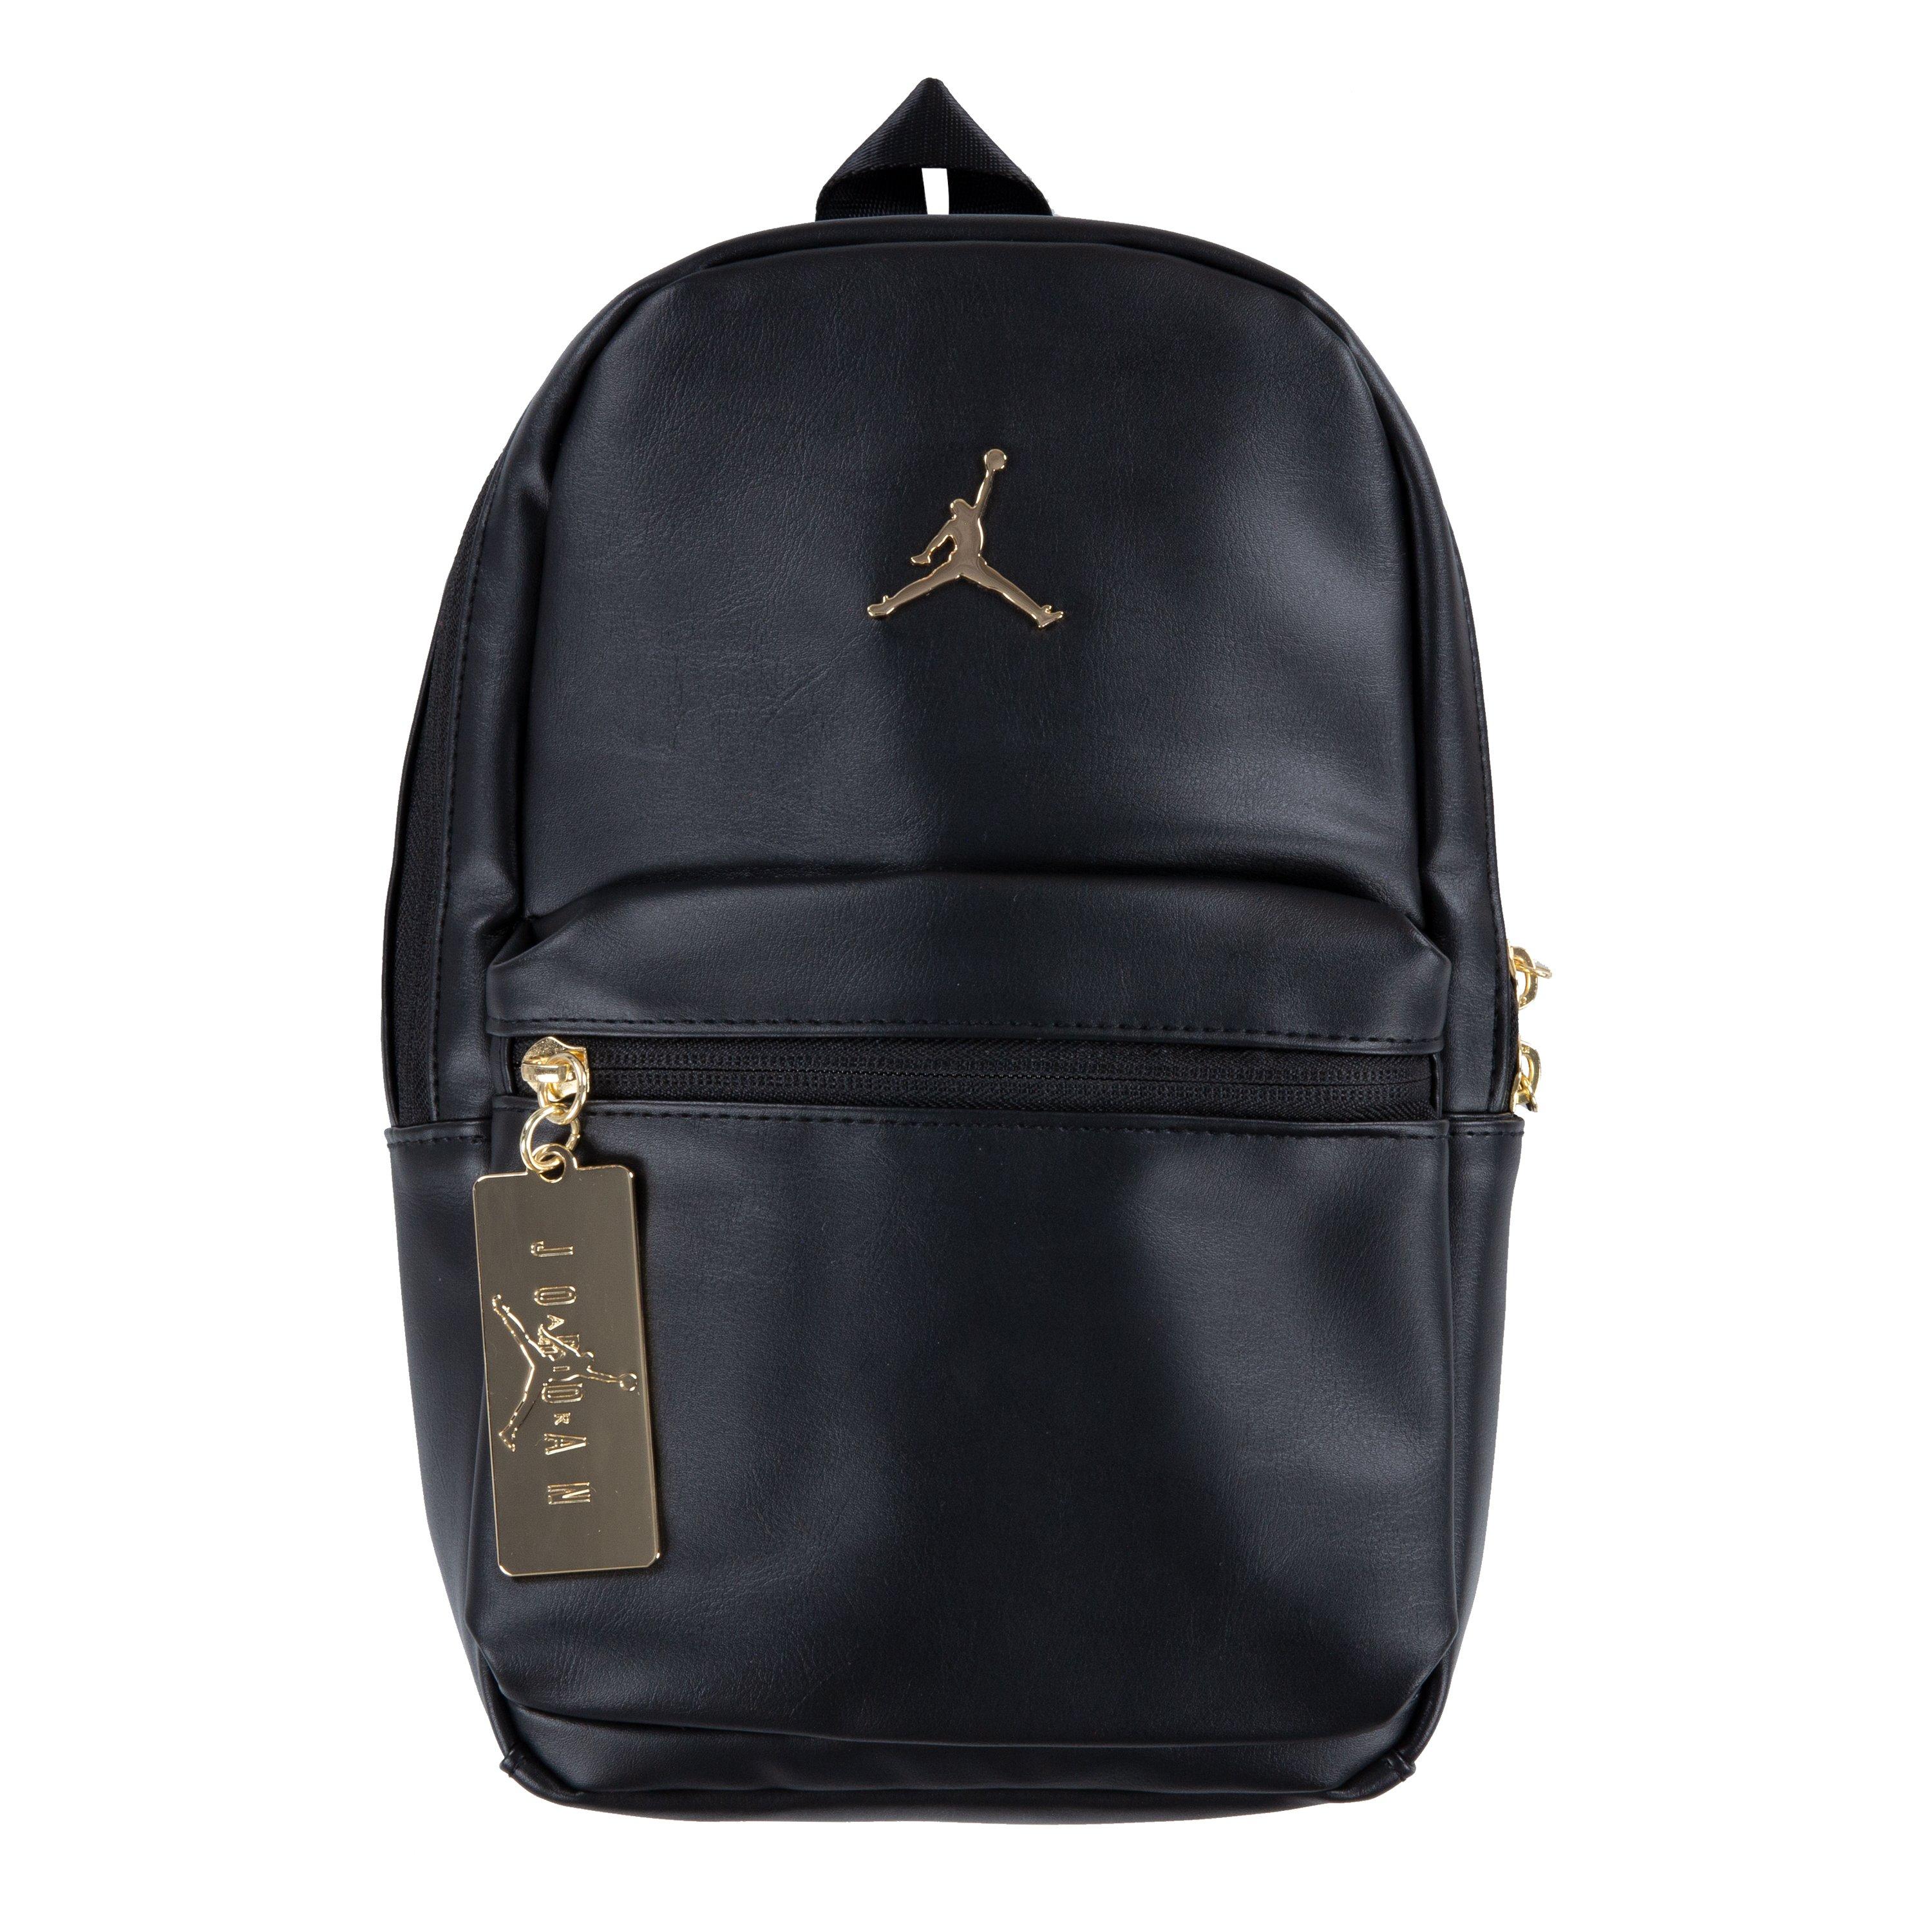 Backpacks | Nike, North Face, adidas 